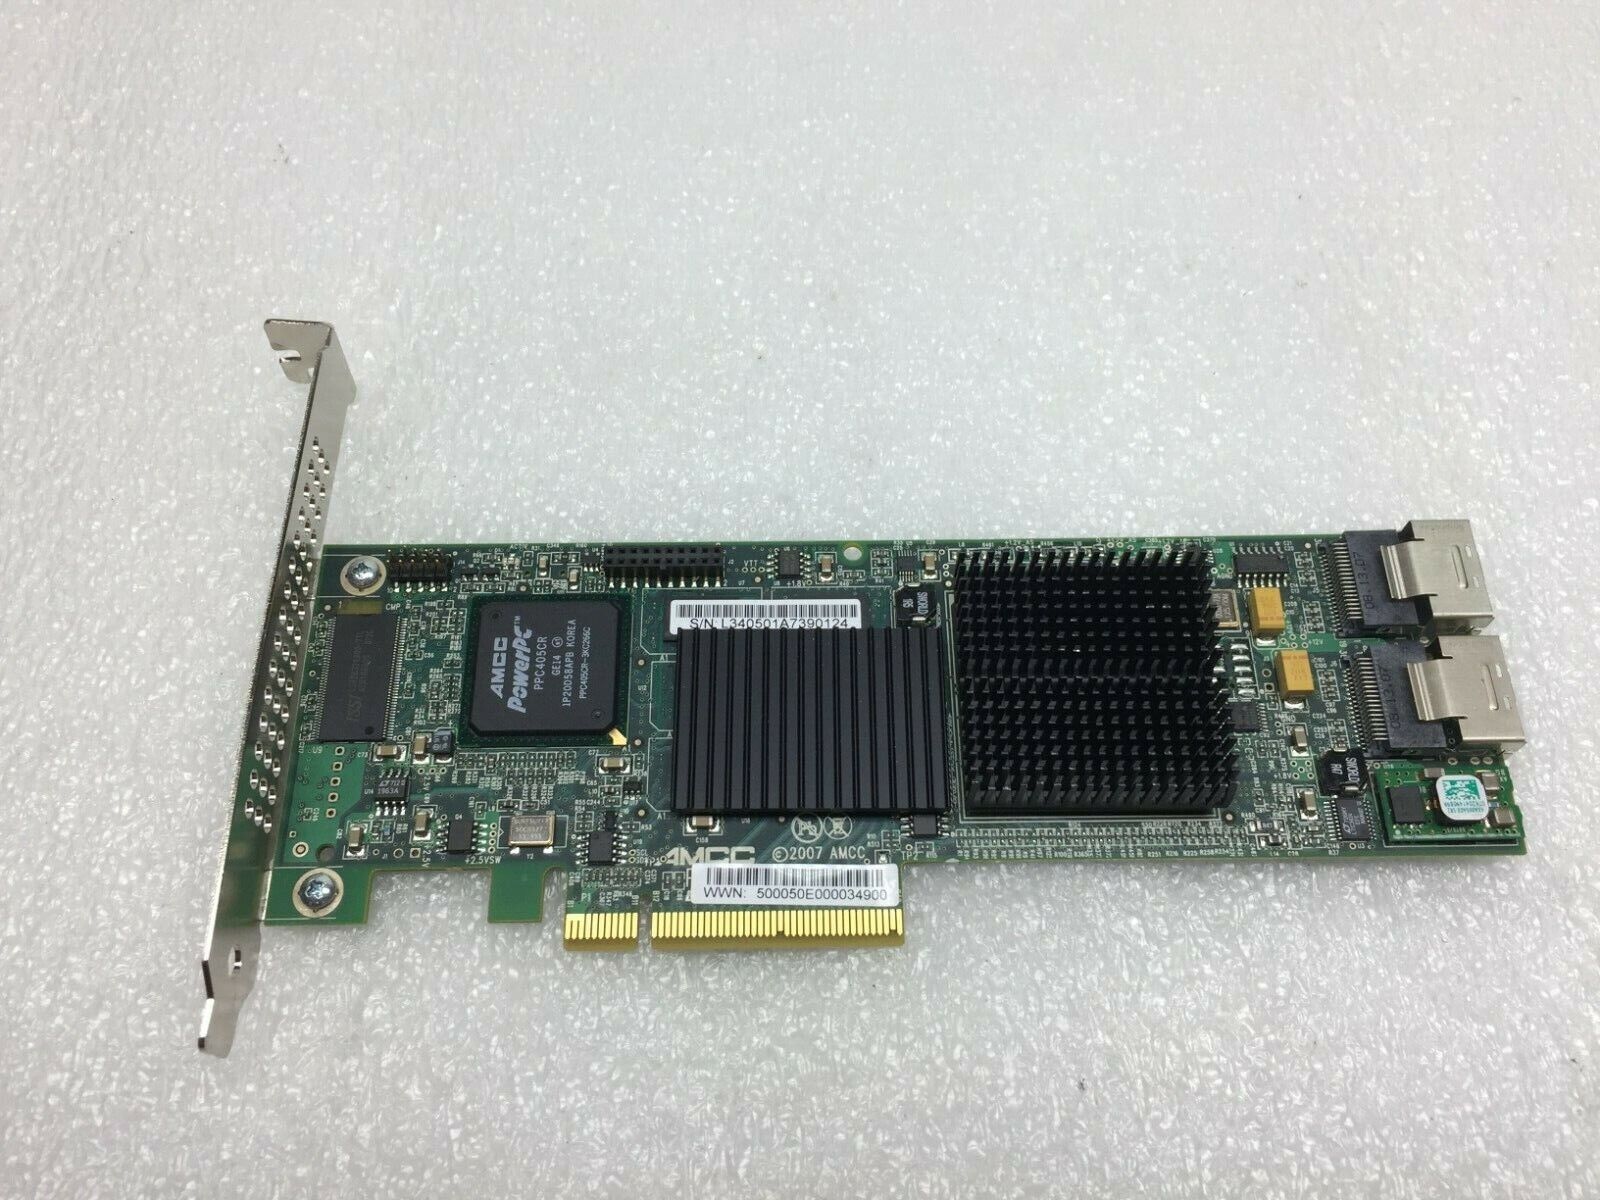 AMCC 3WARE 700-3405-00L 9690SA-8i RAID Controller PCIe Card - N1613 